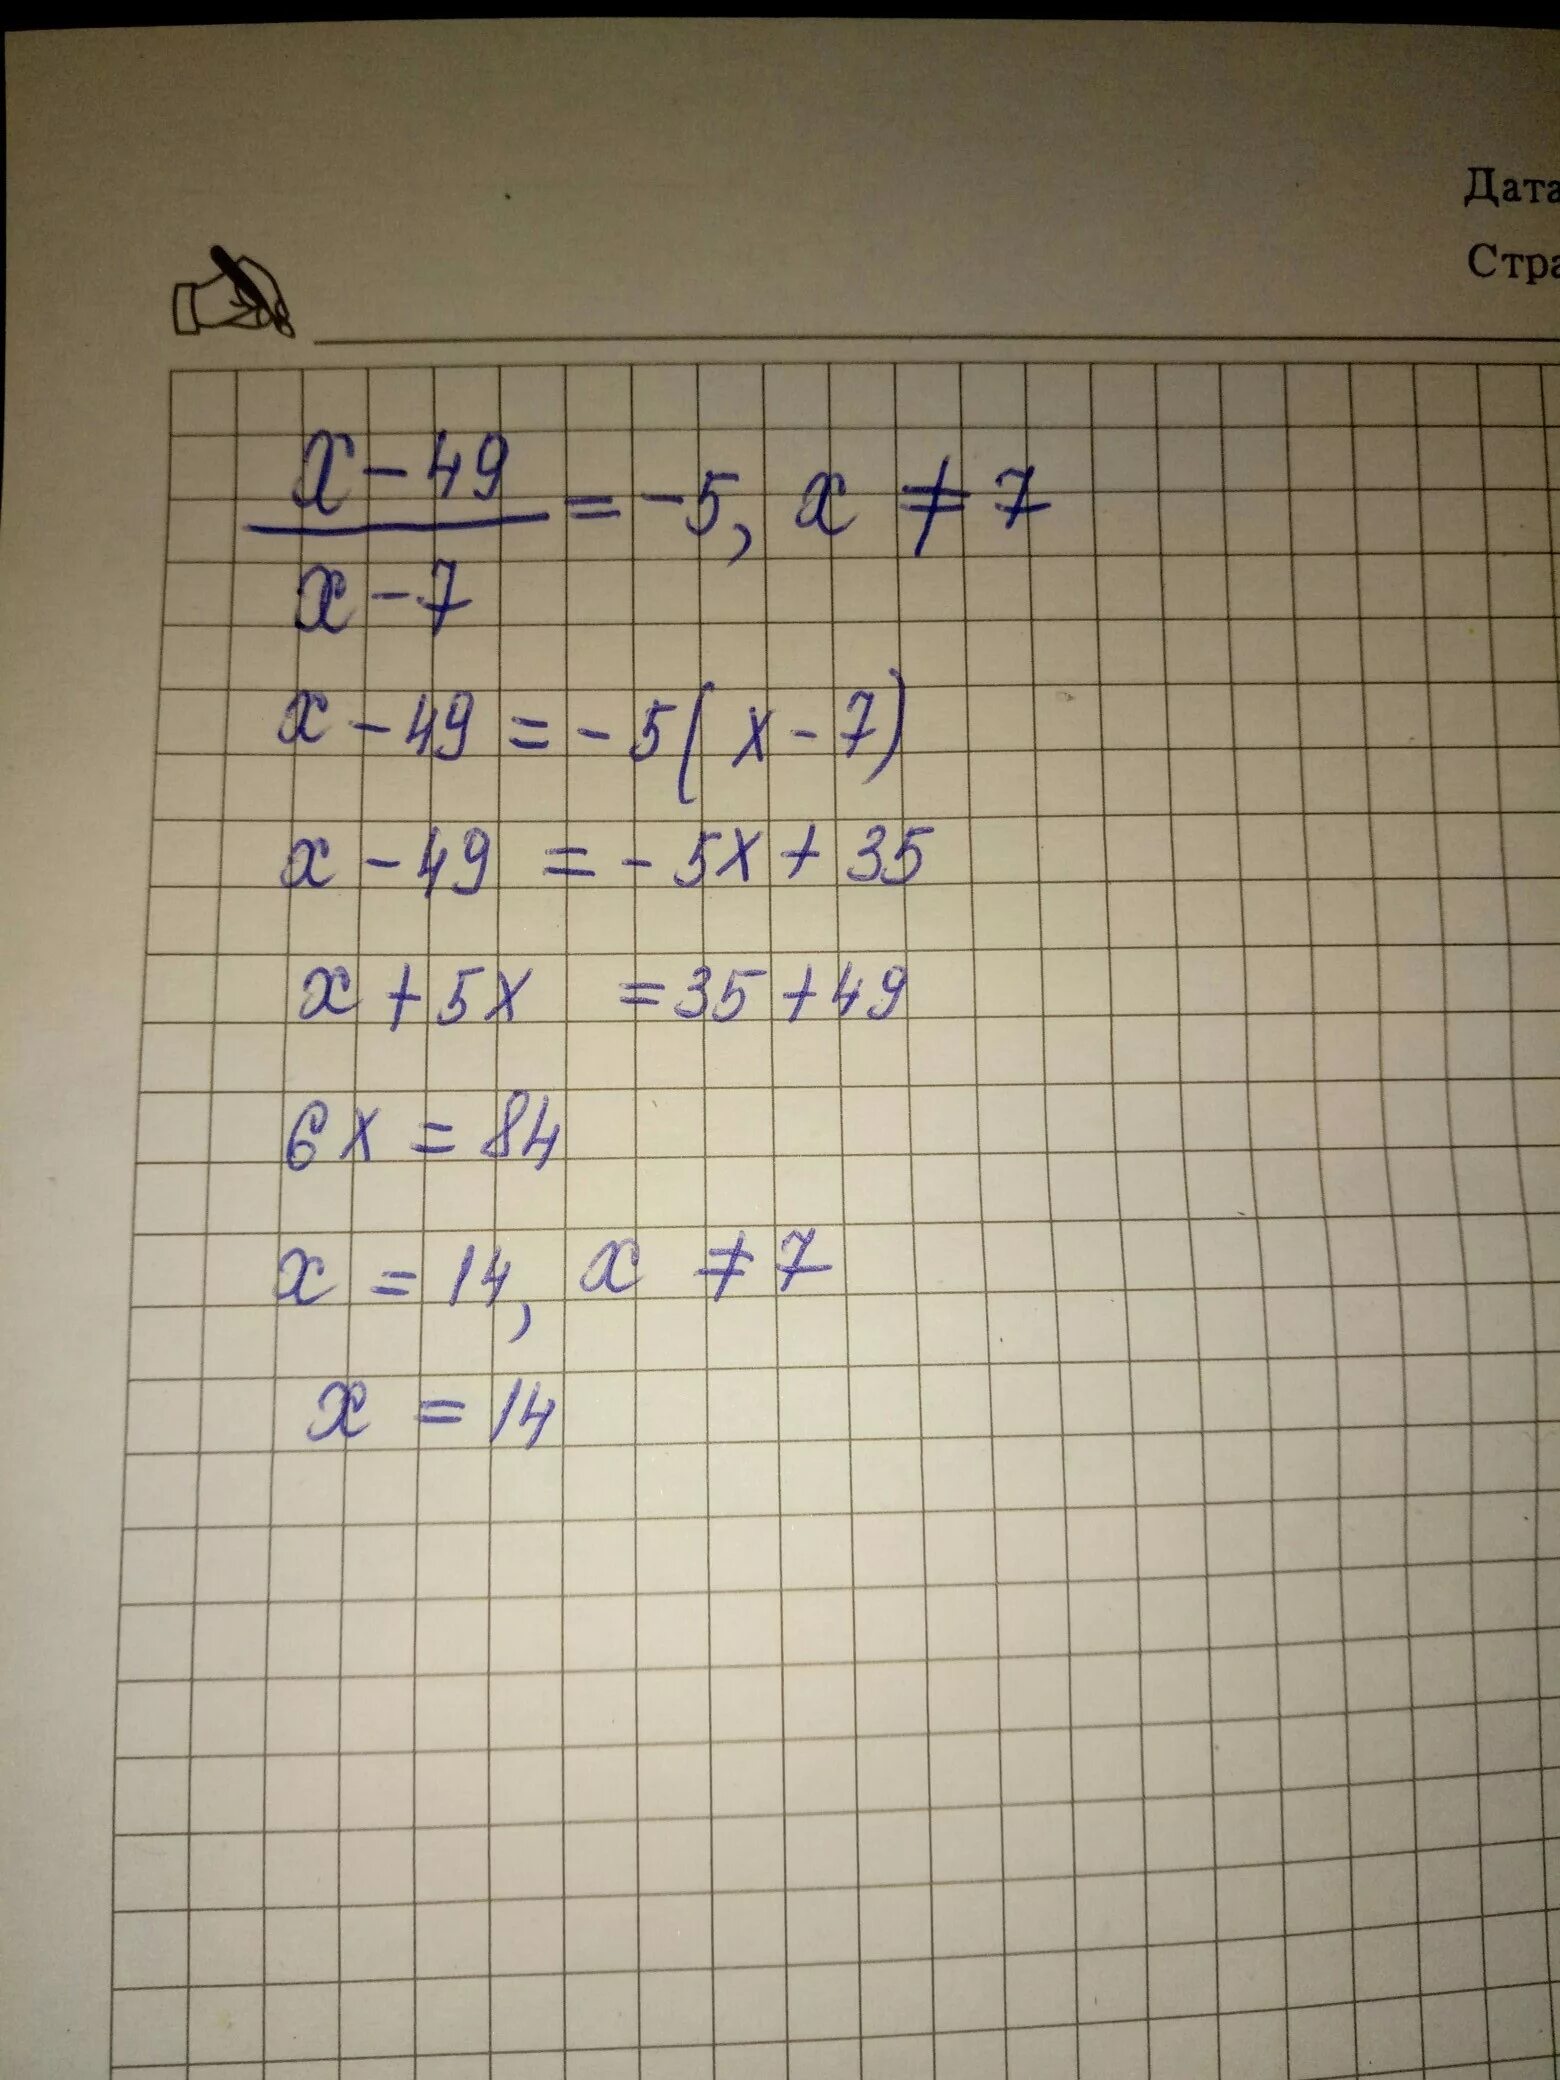 7 x 1 49 0. 7x=49. Х7÷х5 ответы. 7^(5+X)=49^X. 7 X 7 = 49.